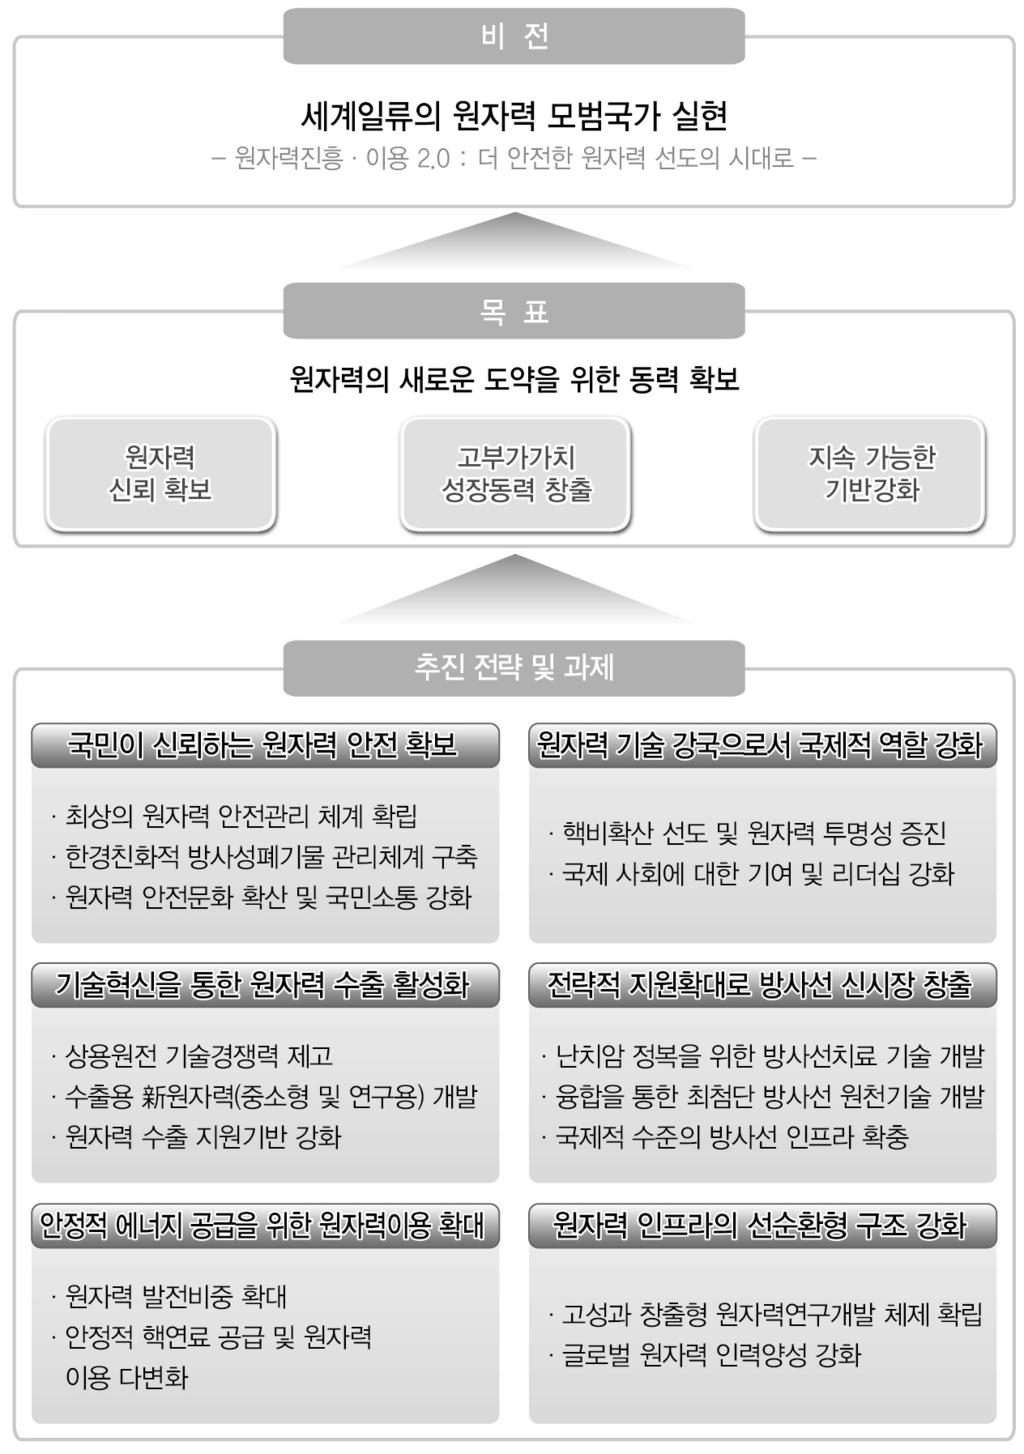 제 1 편총론 < 그림 1-2-1> 제 4 차원자력진흥종합계획 (2012 년